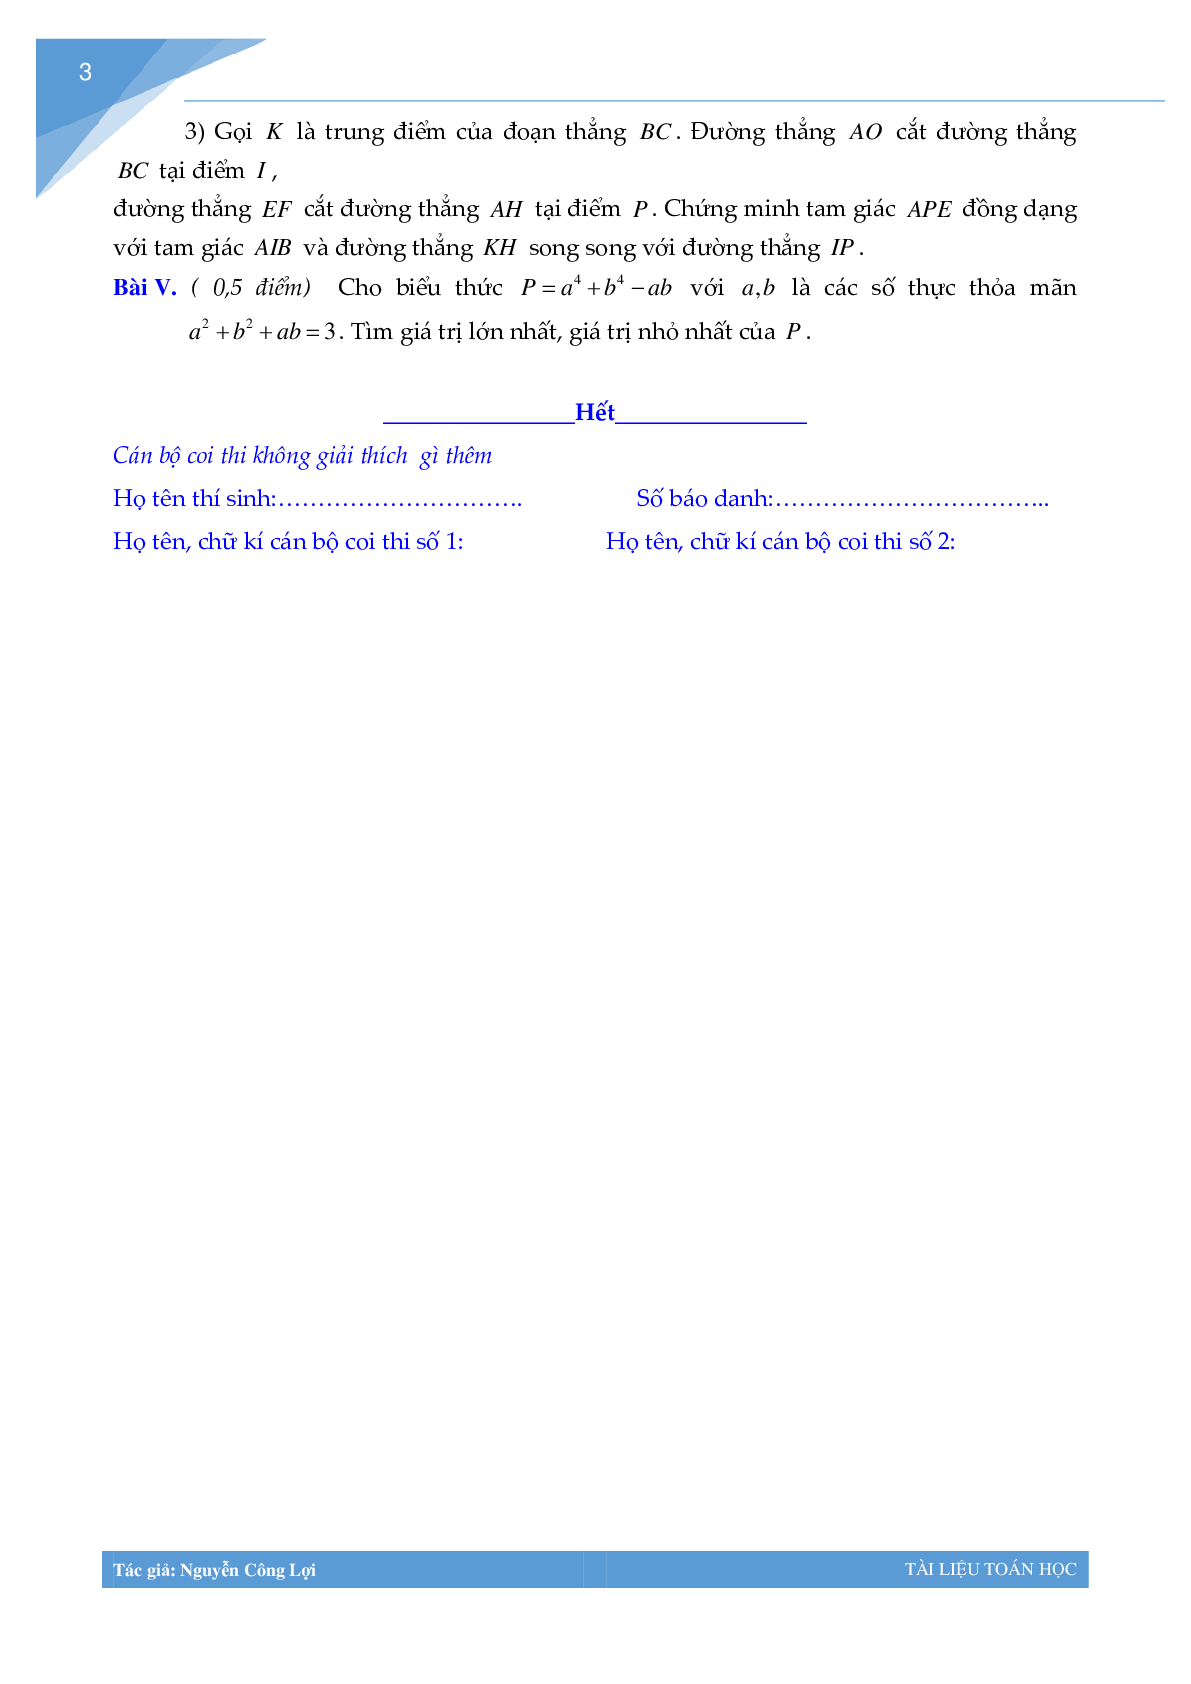 Tuyển tập đề thi vào lớp 10 môn toán Thành phố Hà Nội (trang 2)